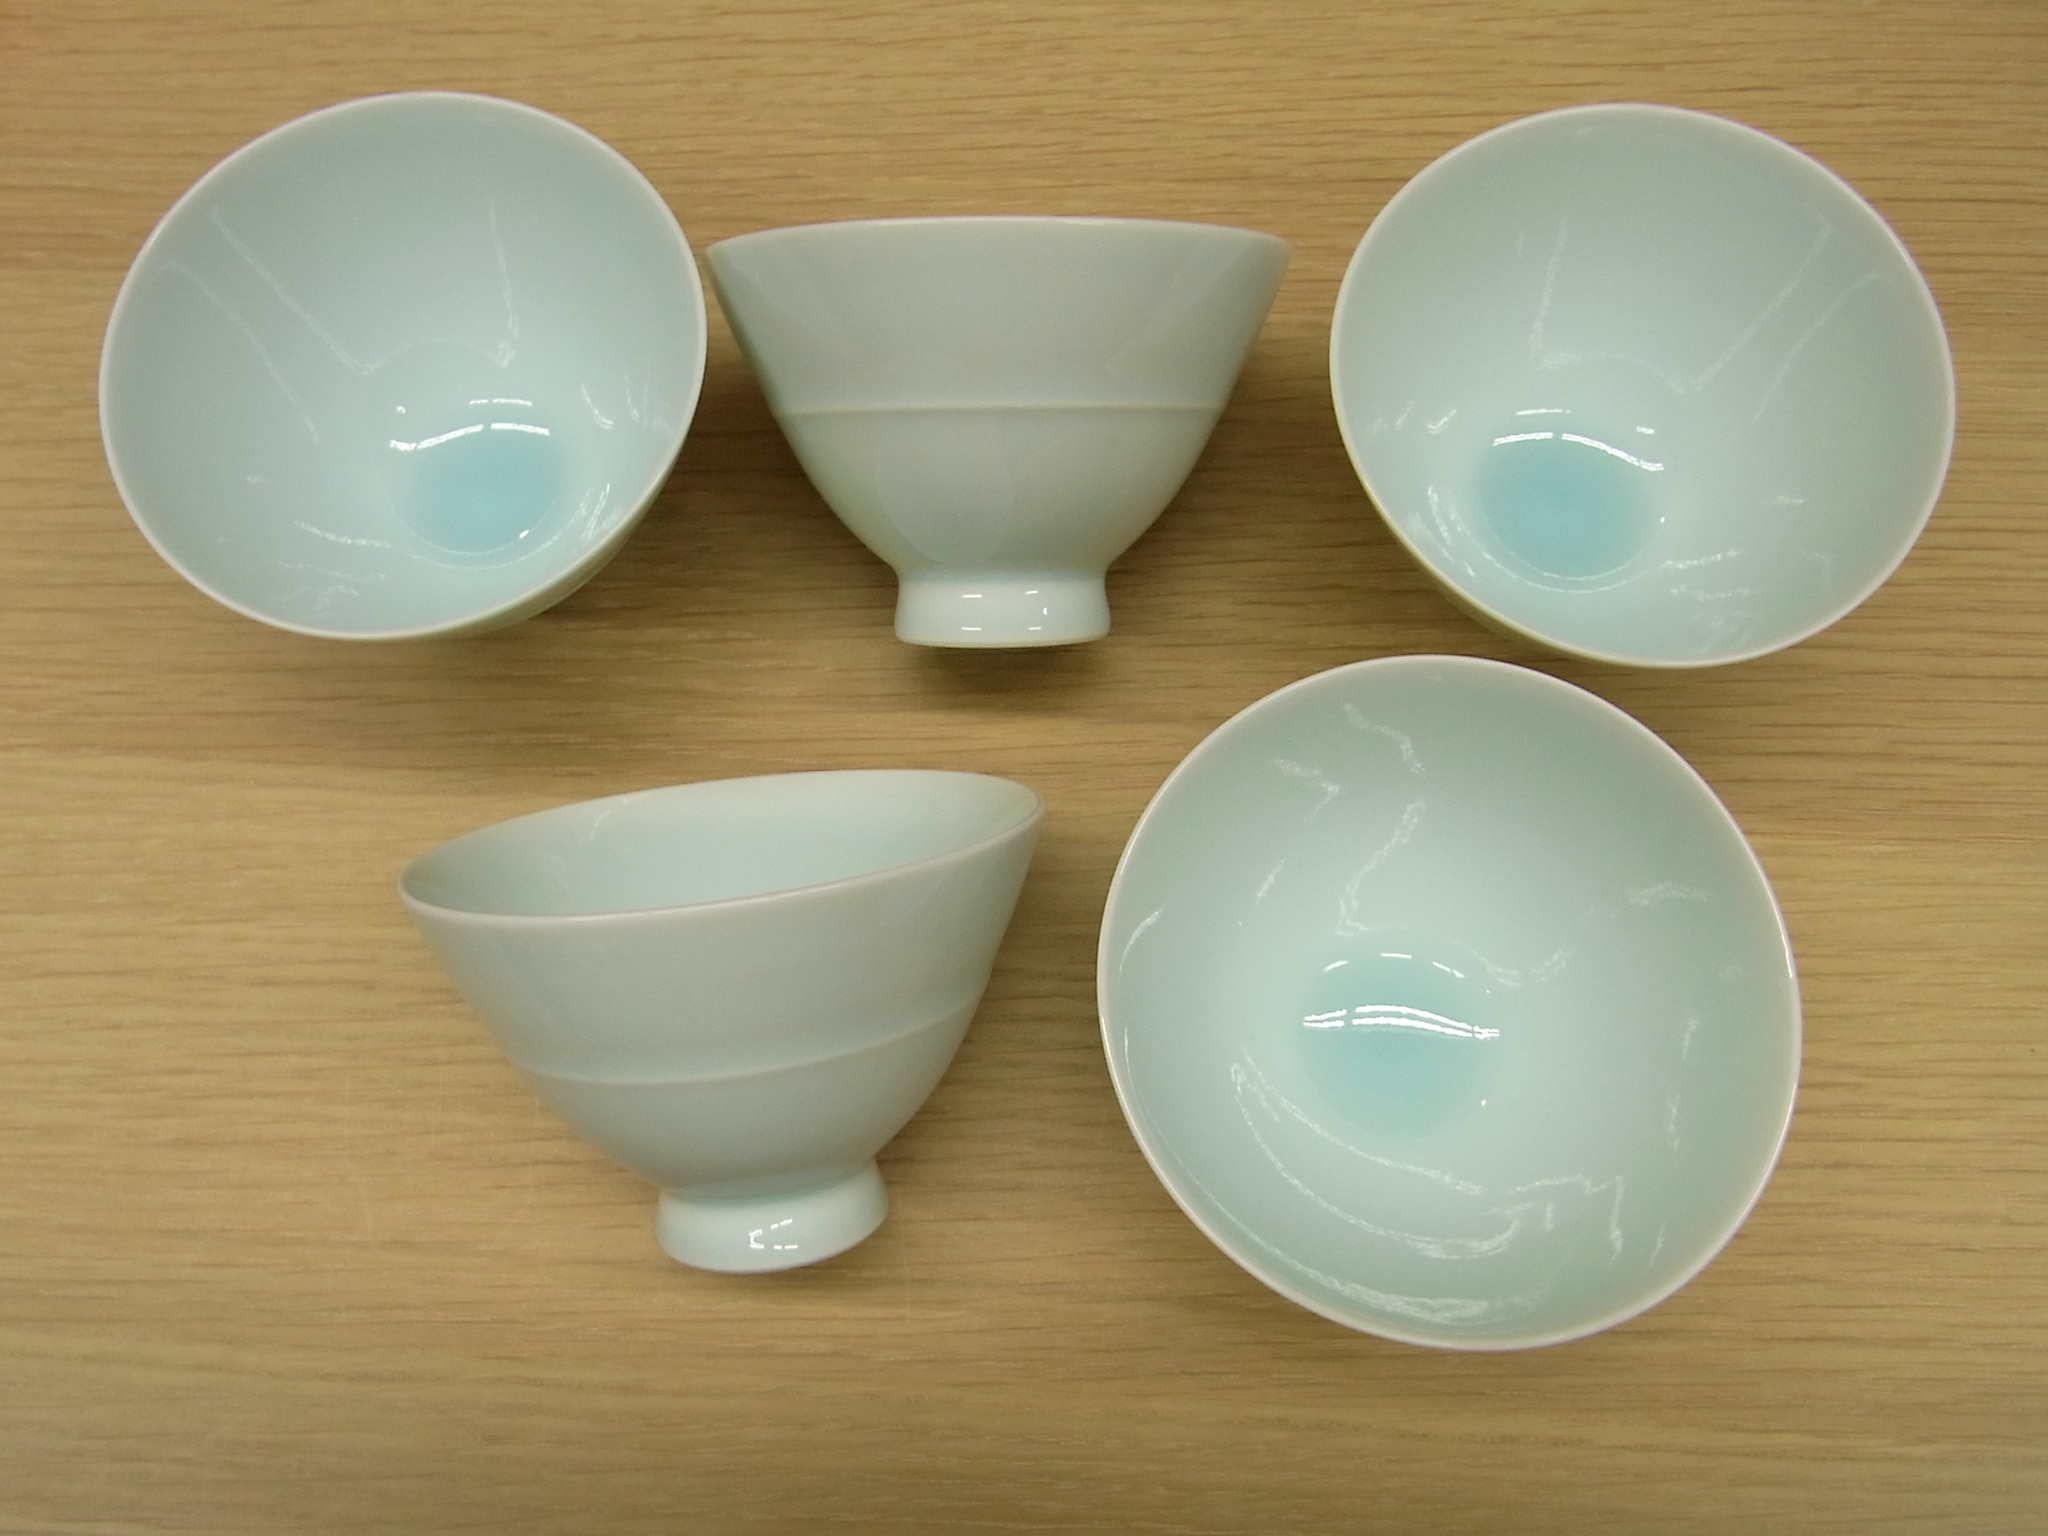 陶器 有田焼 青白磁 湯呑 煎茶碗 汲出し碗 高級陶器 高品質 日本製 お洒落な器 薄手 割れにくい 高温焼成 使いやすい 重ねられる 扱い